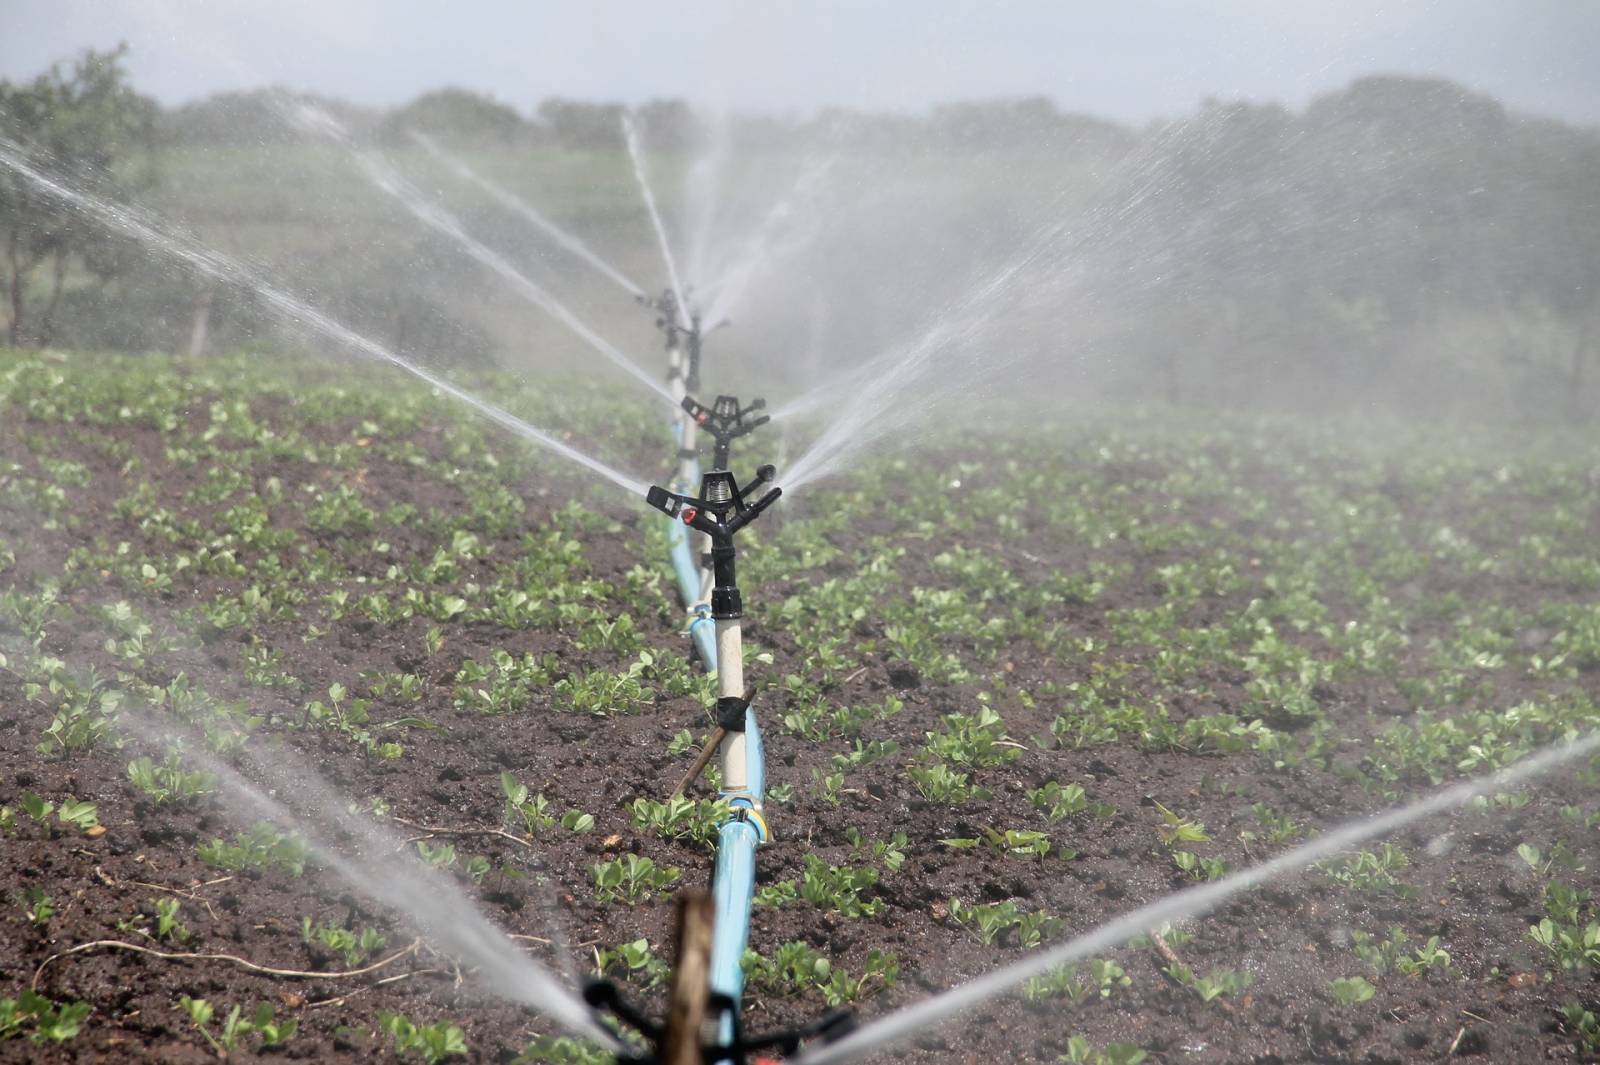 Réalisation de forages pour l'irrigation en agriculture